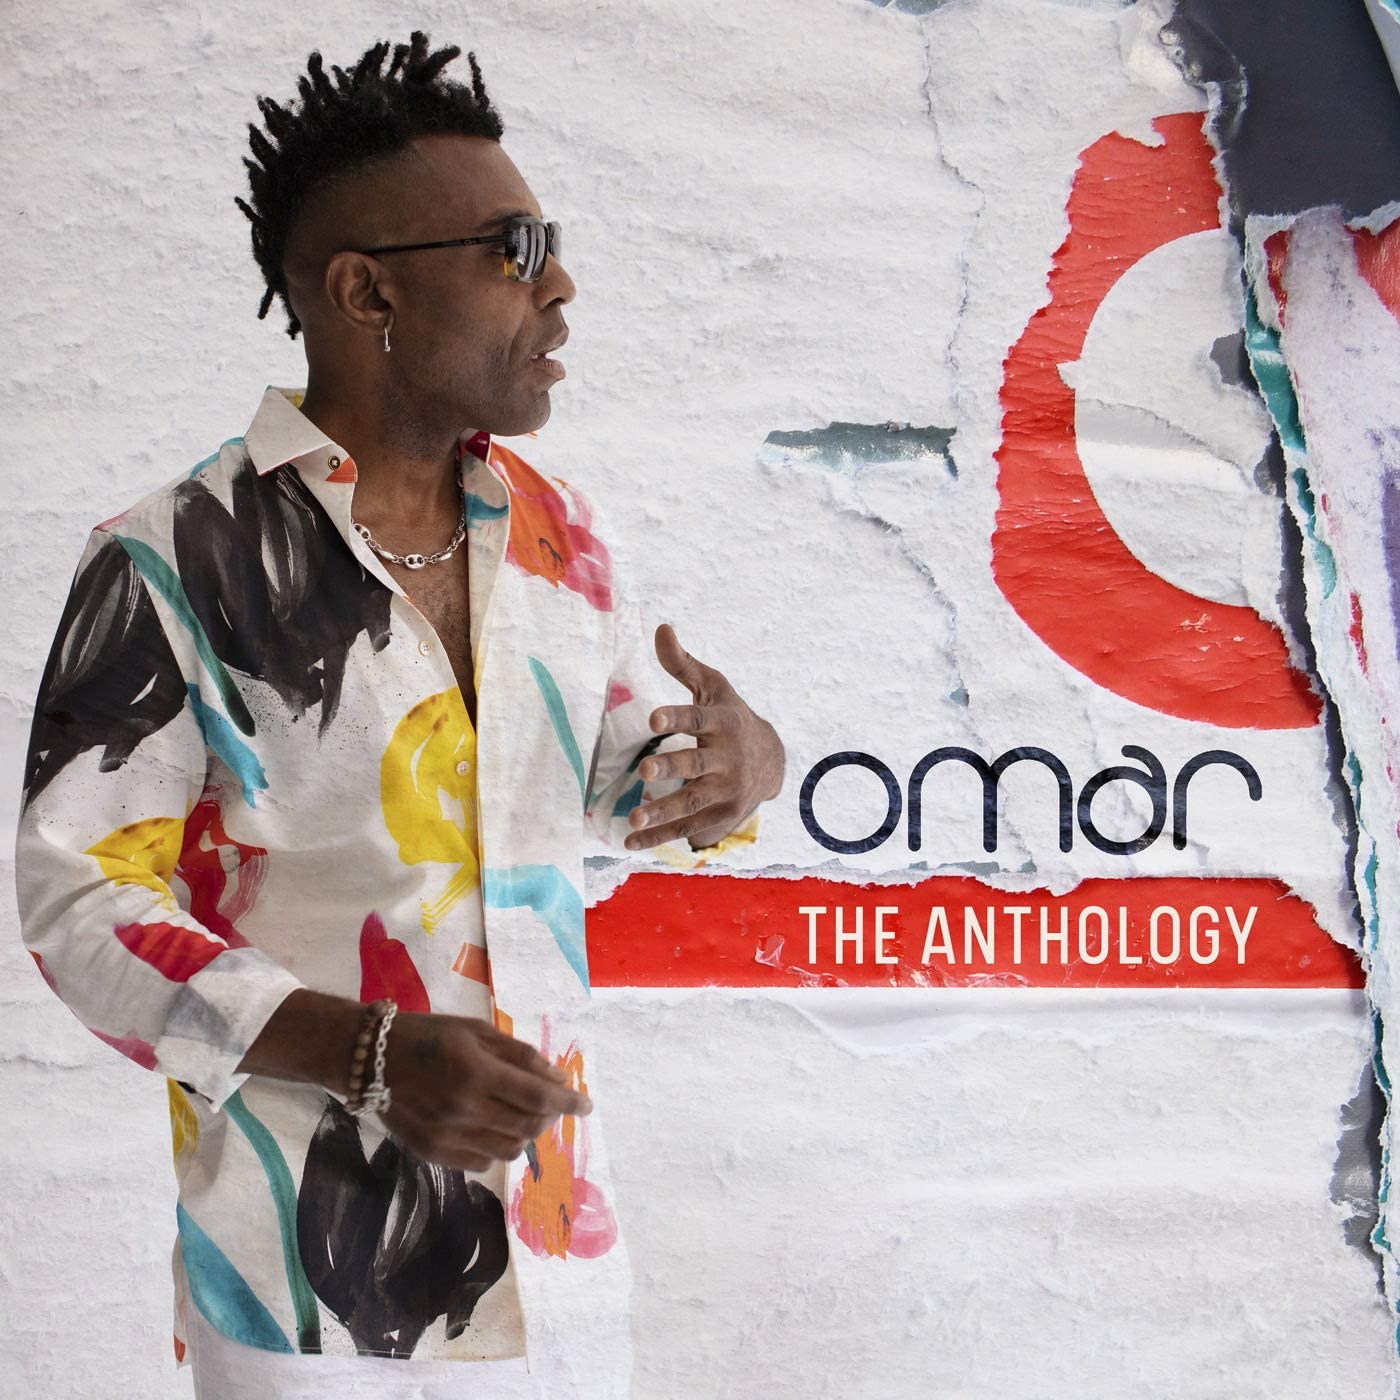 Omar - The Anthology